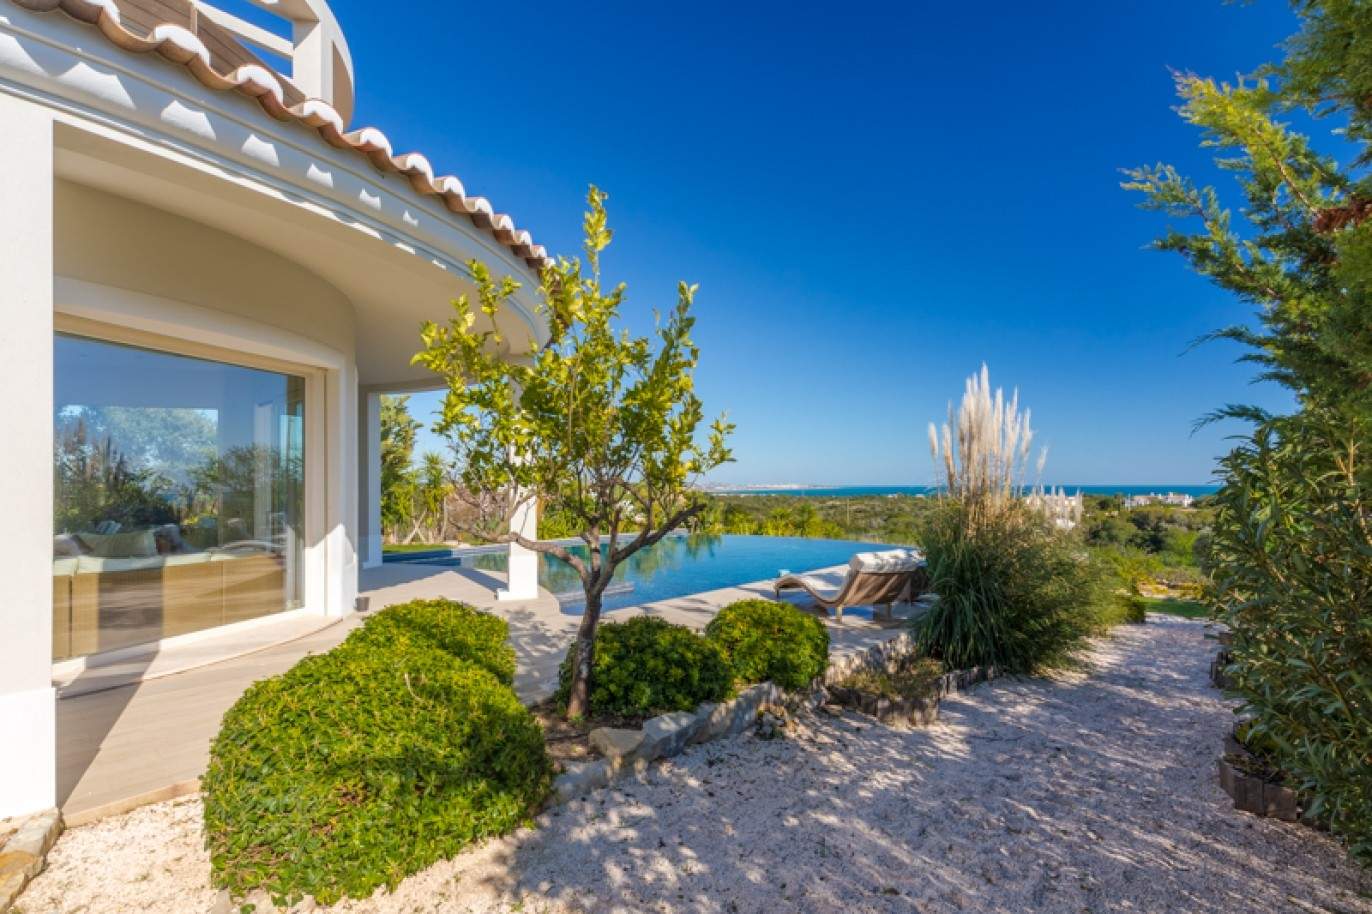 Moradia à venda, com vista mar, perto praia e golfe, Algarve, Portugal_76404